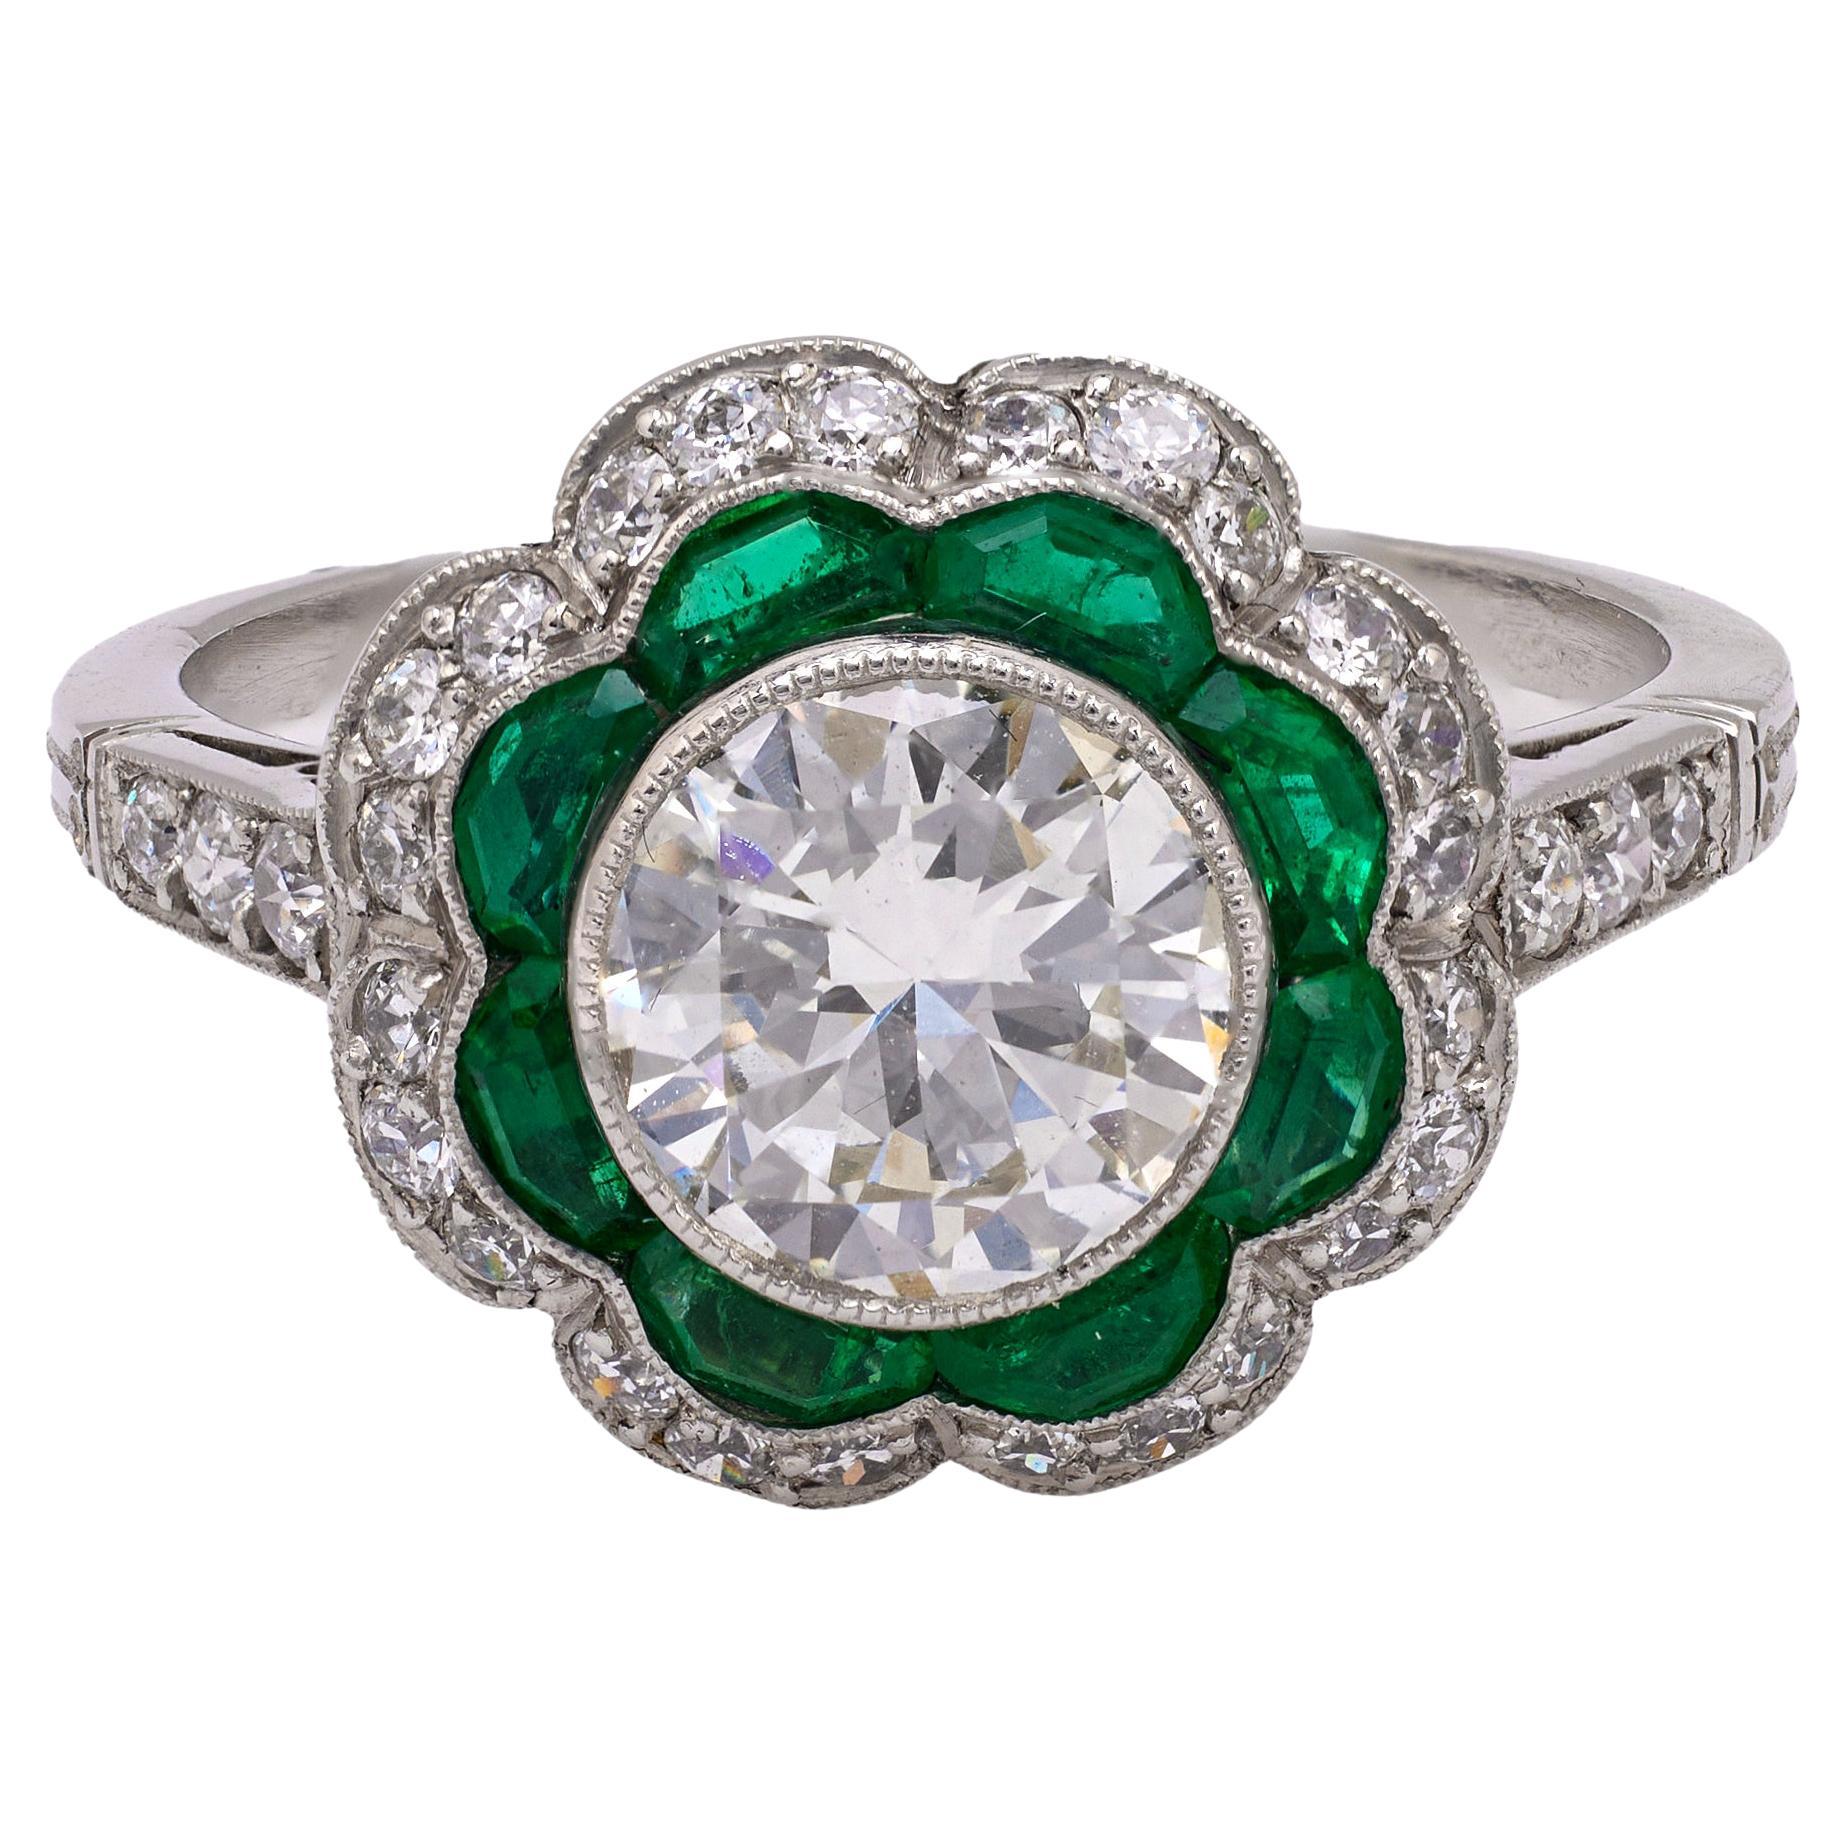 Art Deco Inspired 1.33 Carat Round Brilliant Cut Diamond Emerald Platinum Ring